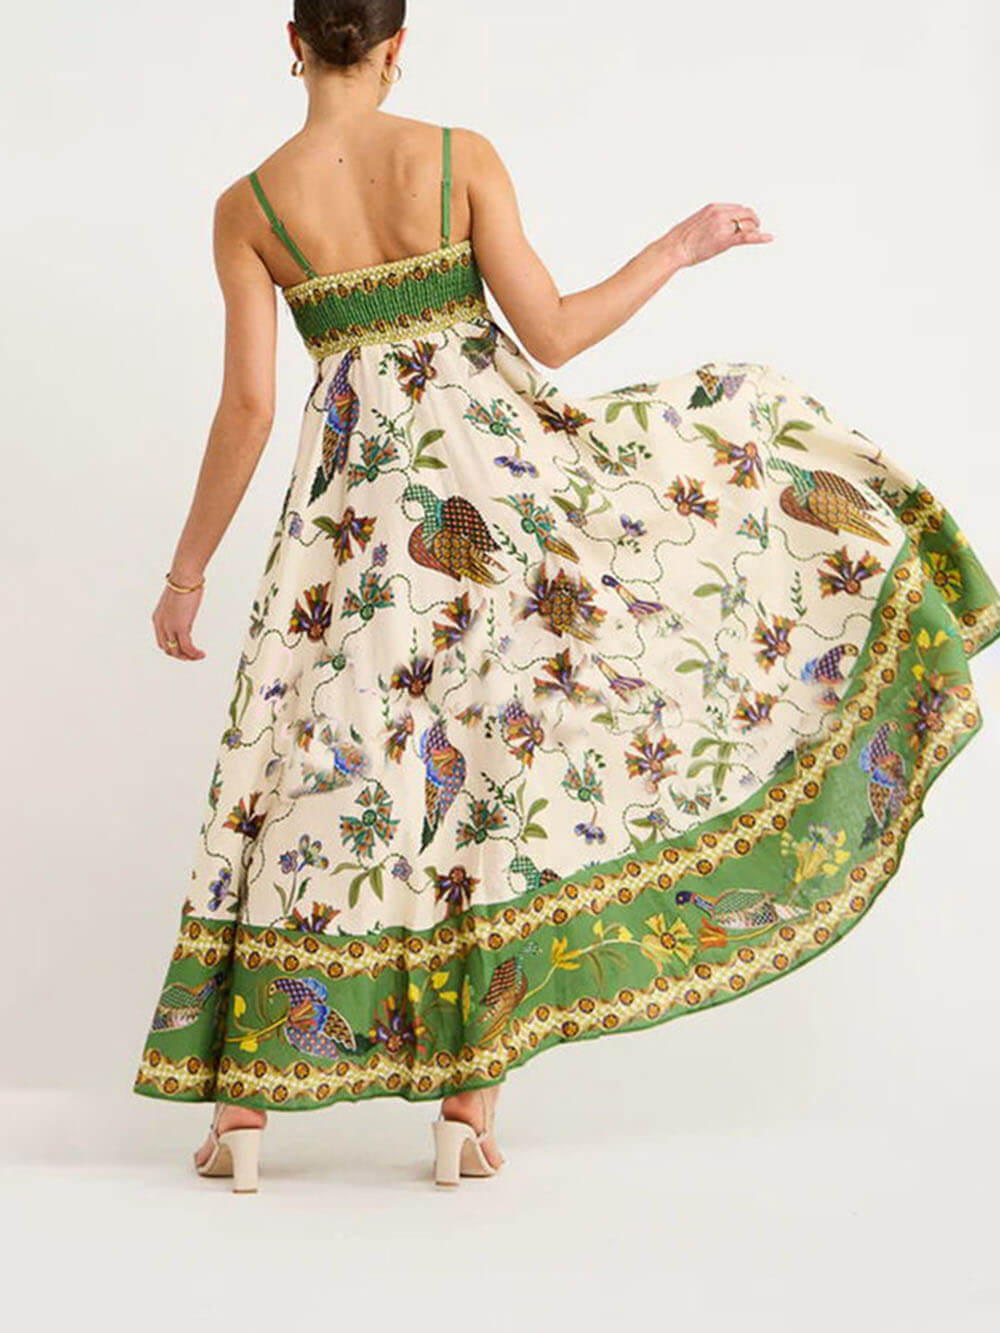 Zonovergoten jurk met unieke print en gesmokte achterkant